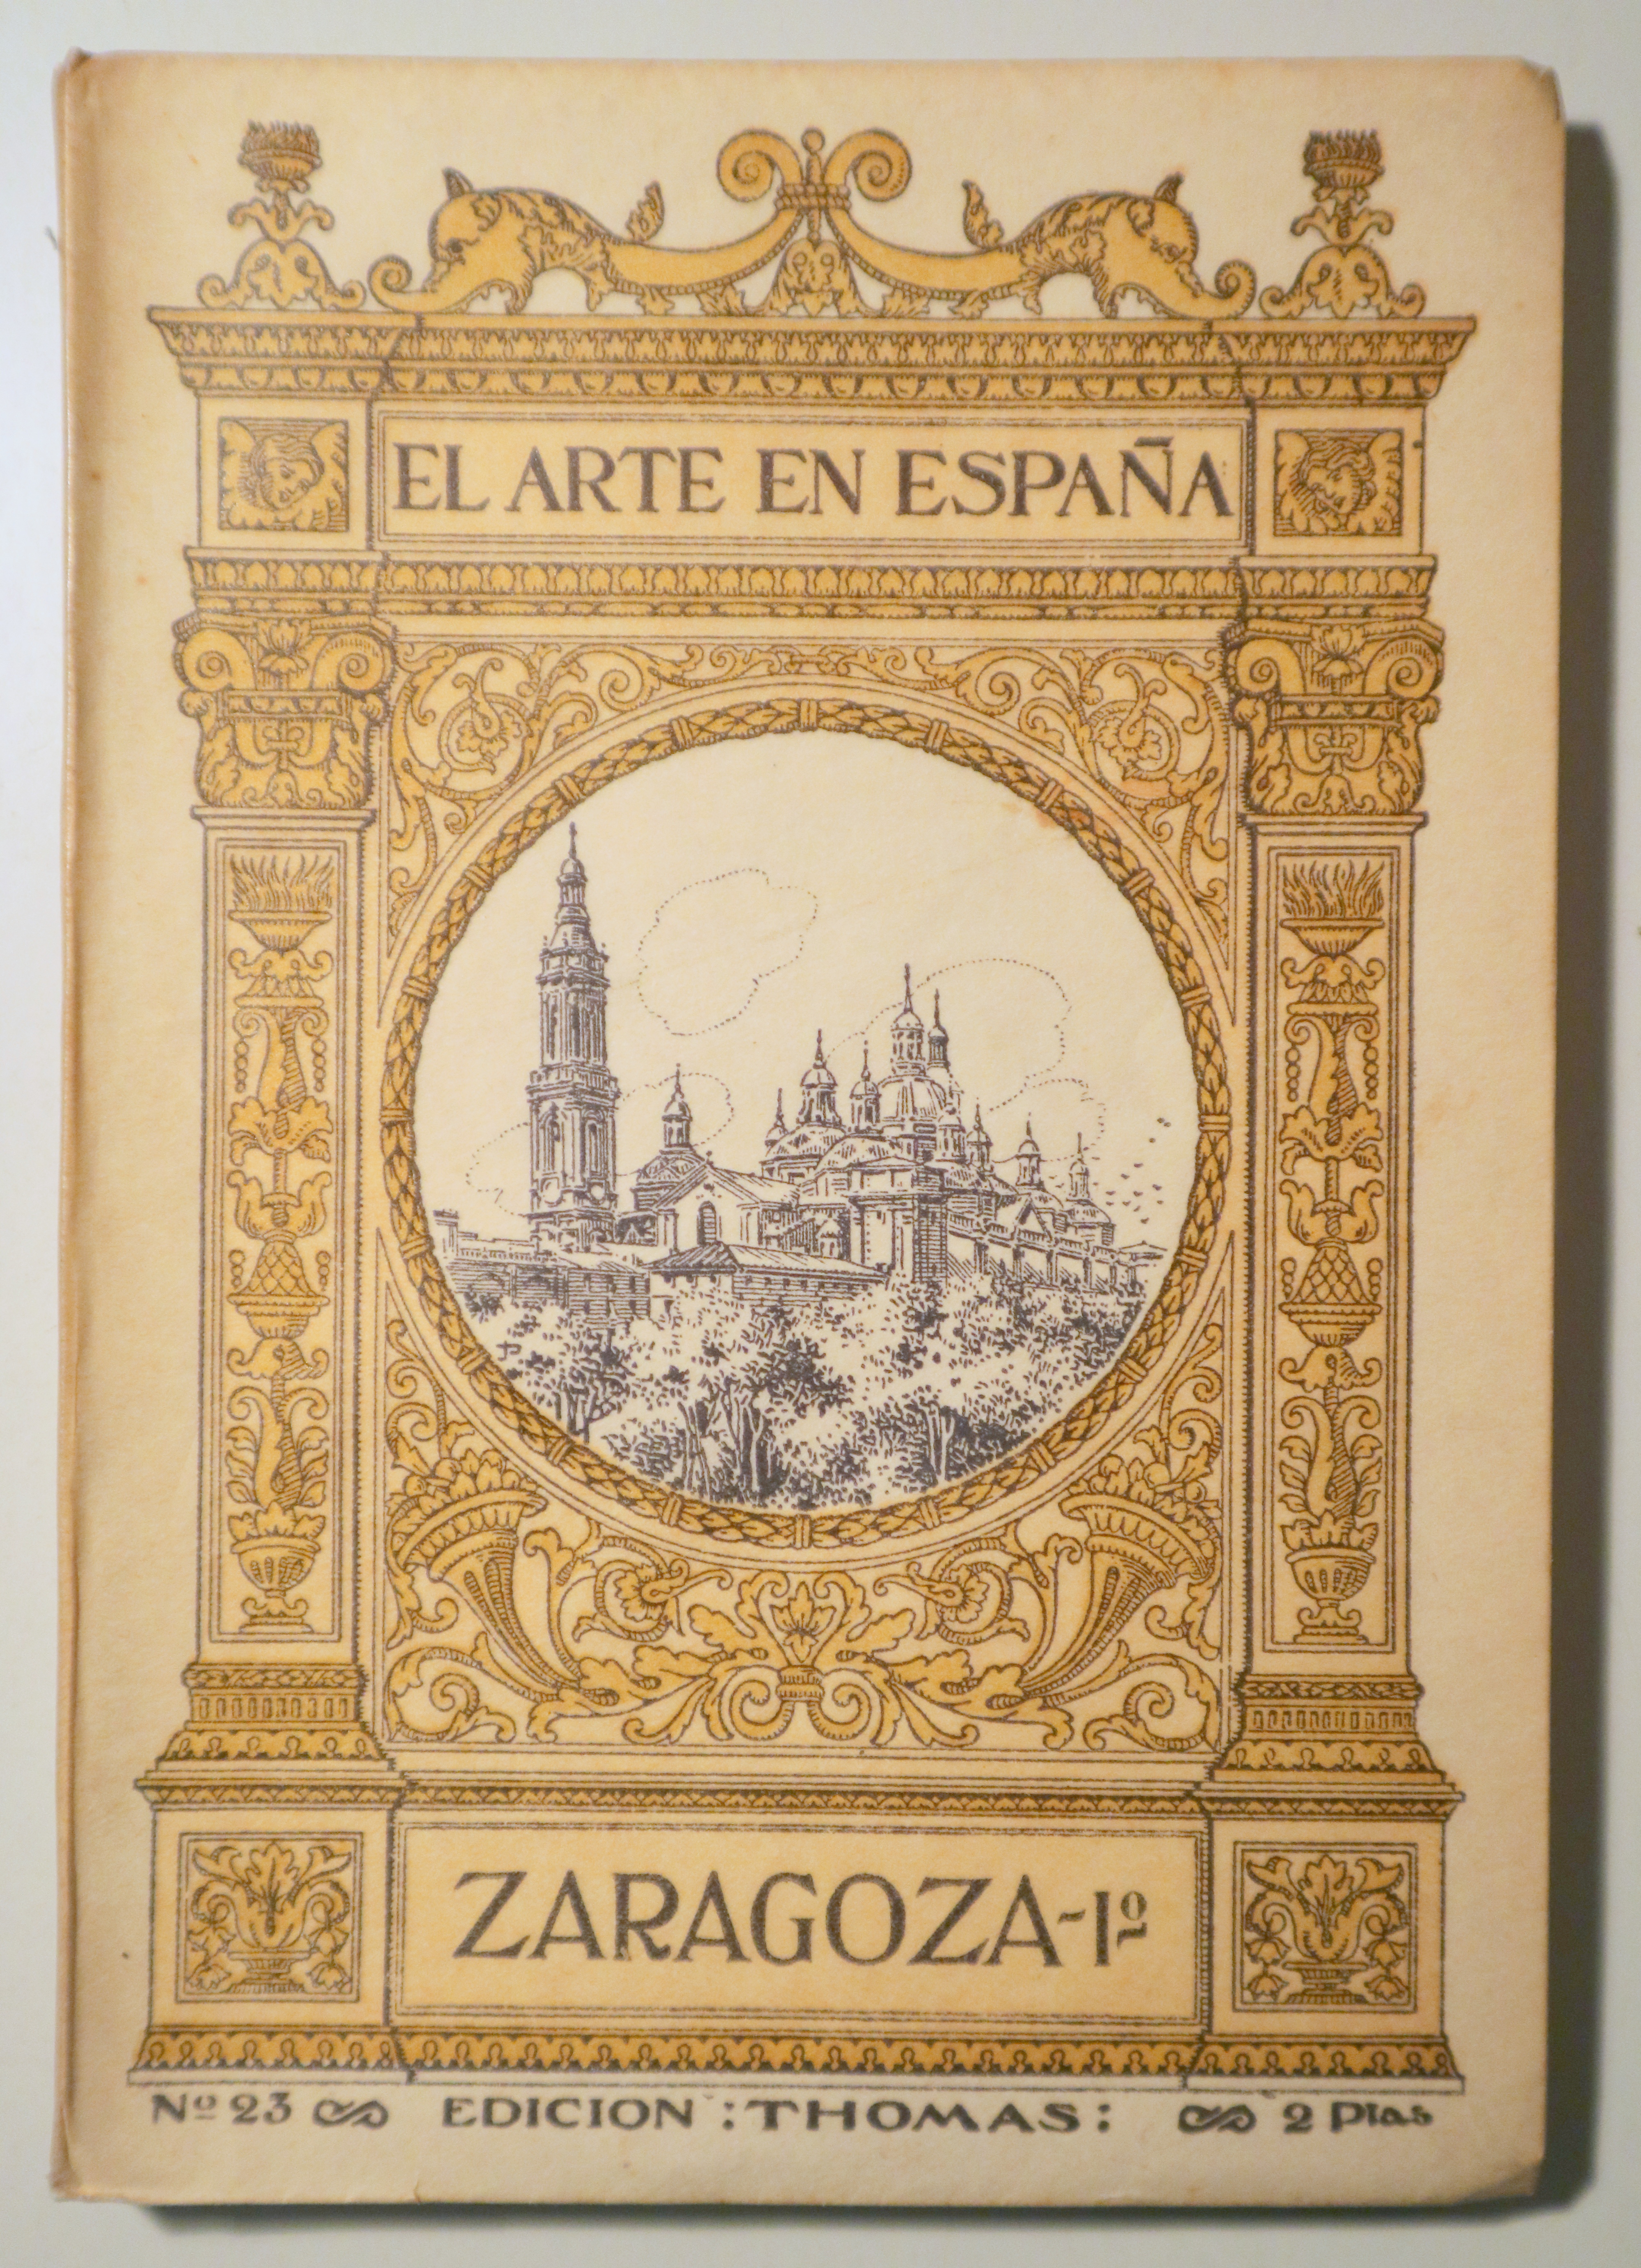 EL ARTE EN ESPAÑA nº 23. Zaragoza I - Barcelona s/f - Muy ilustrado